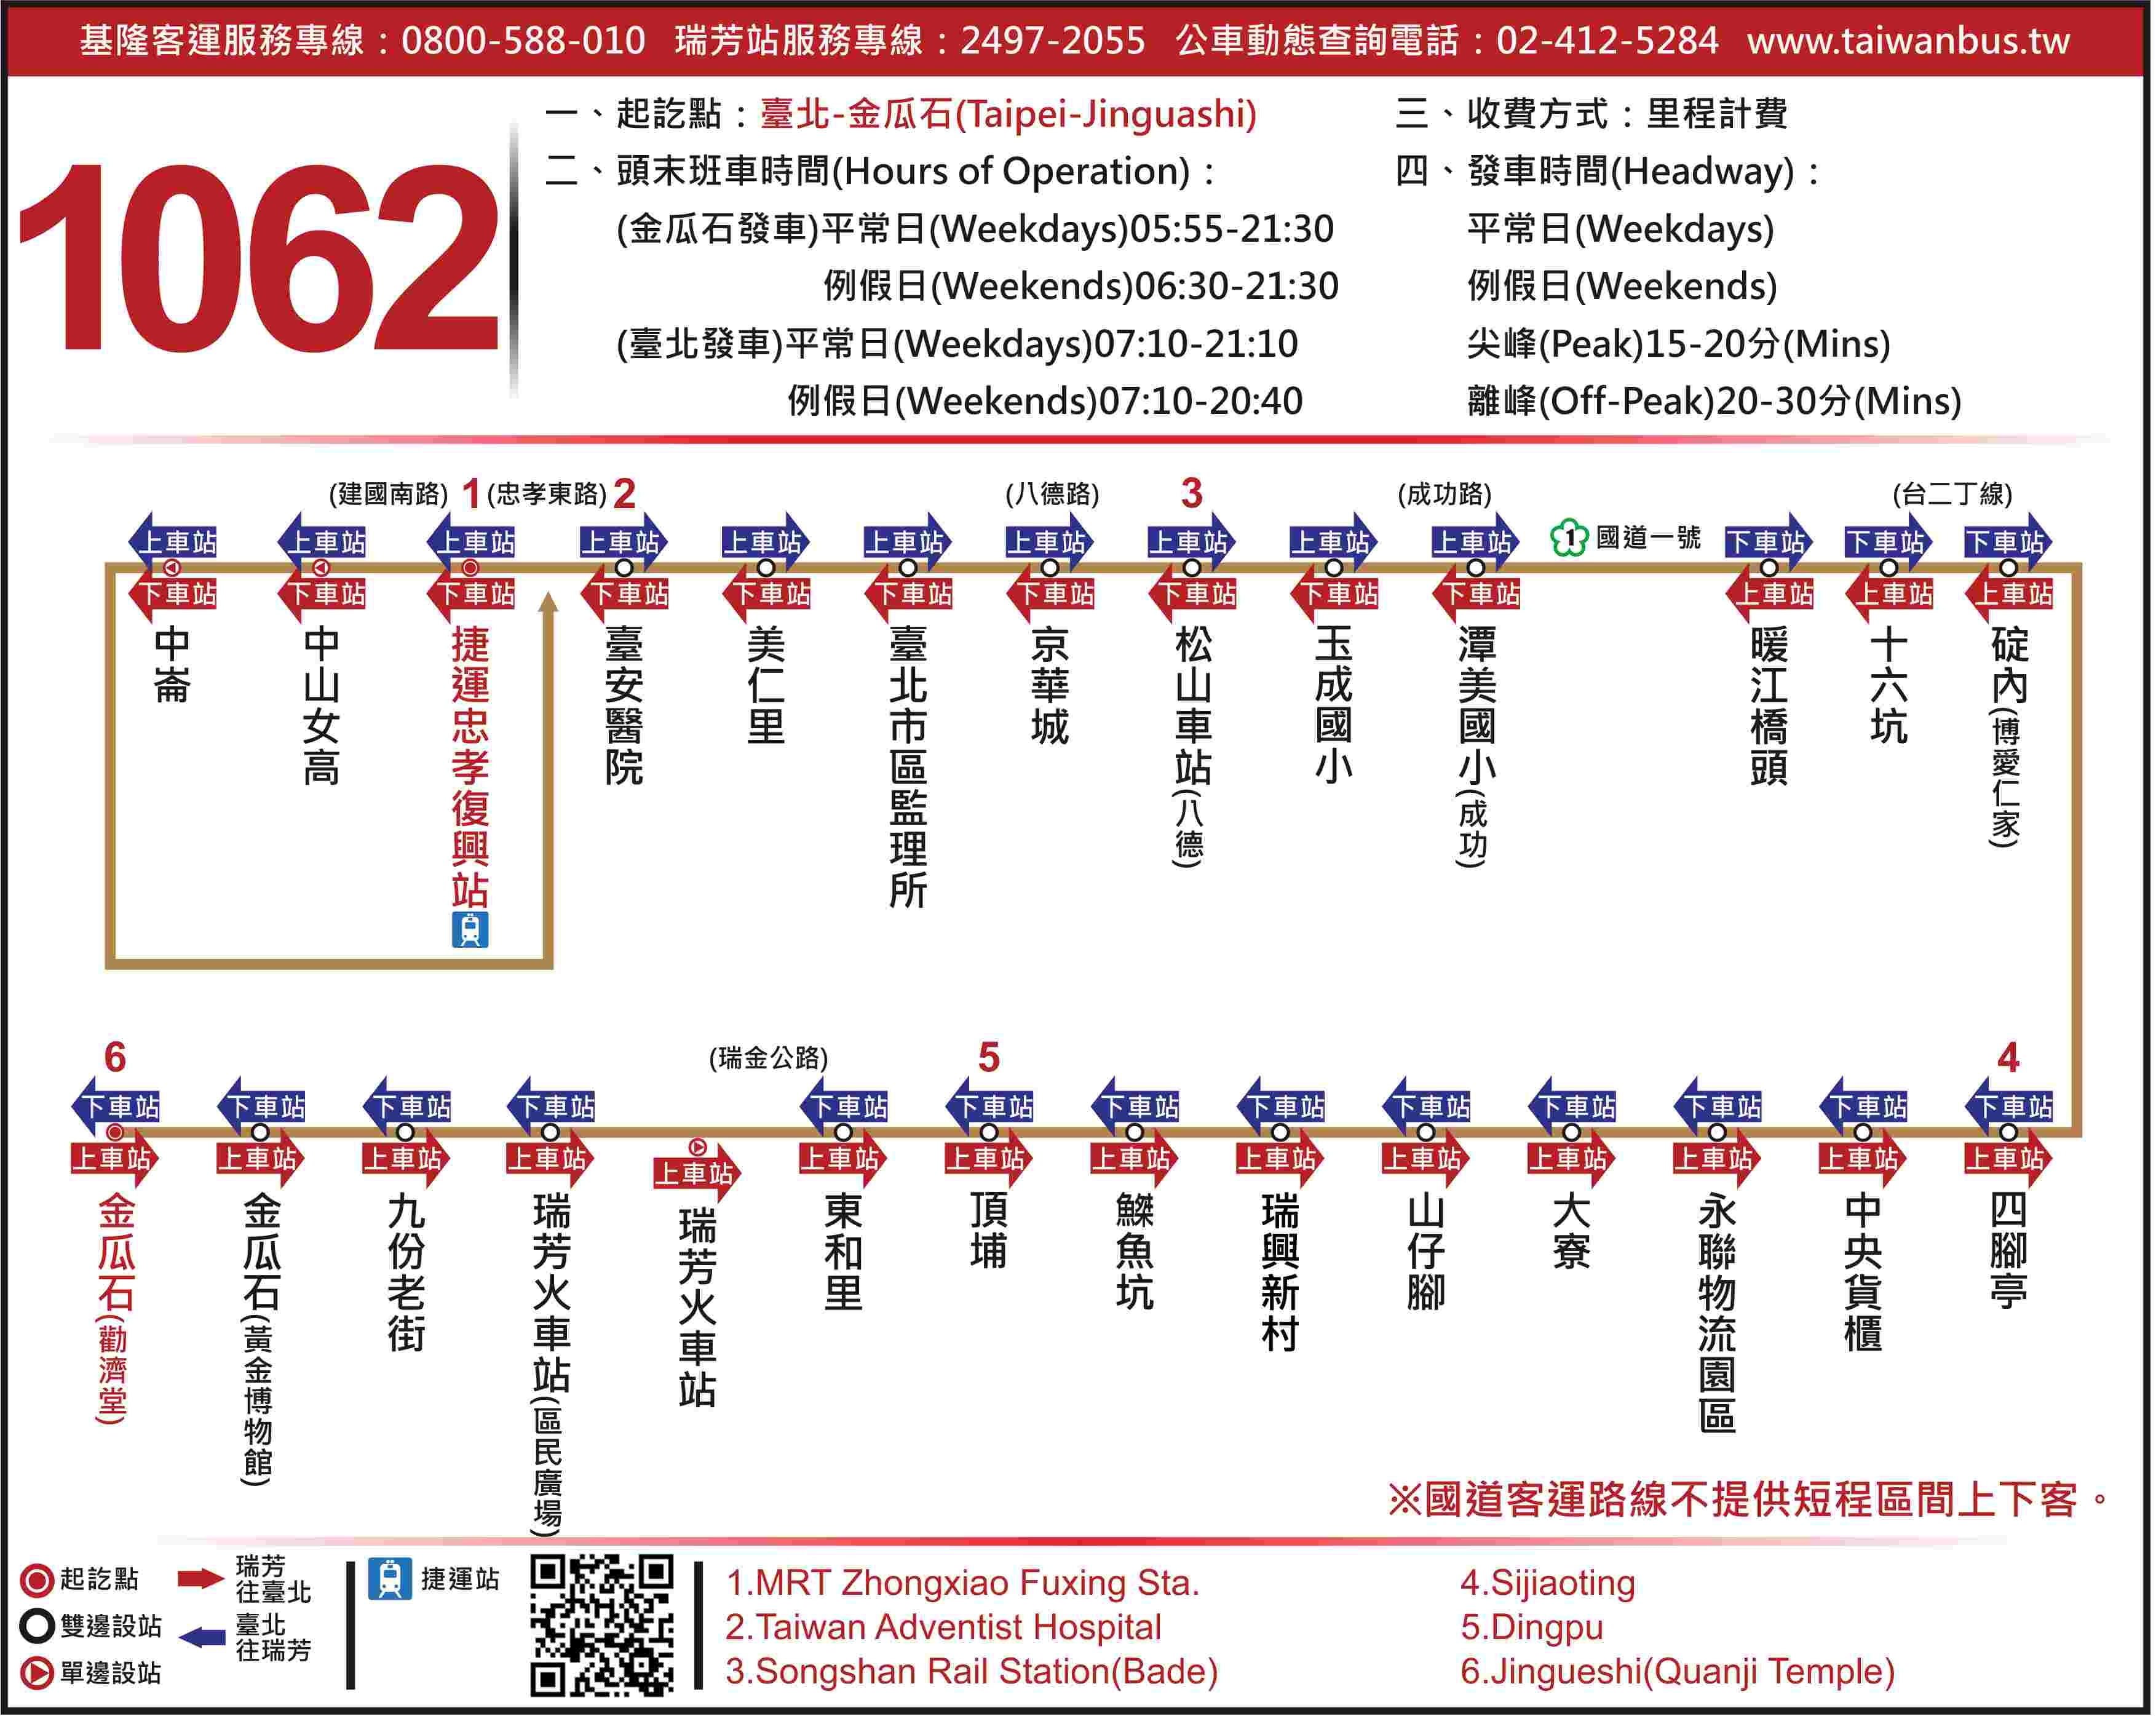 基隆客運 1062 號：台北、瑞芳火車站、九份、金瓜石行車資訊與票價